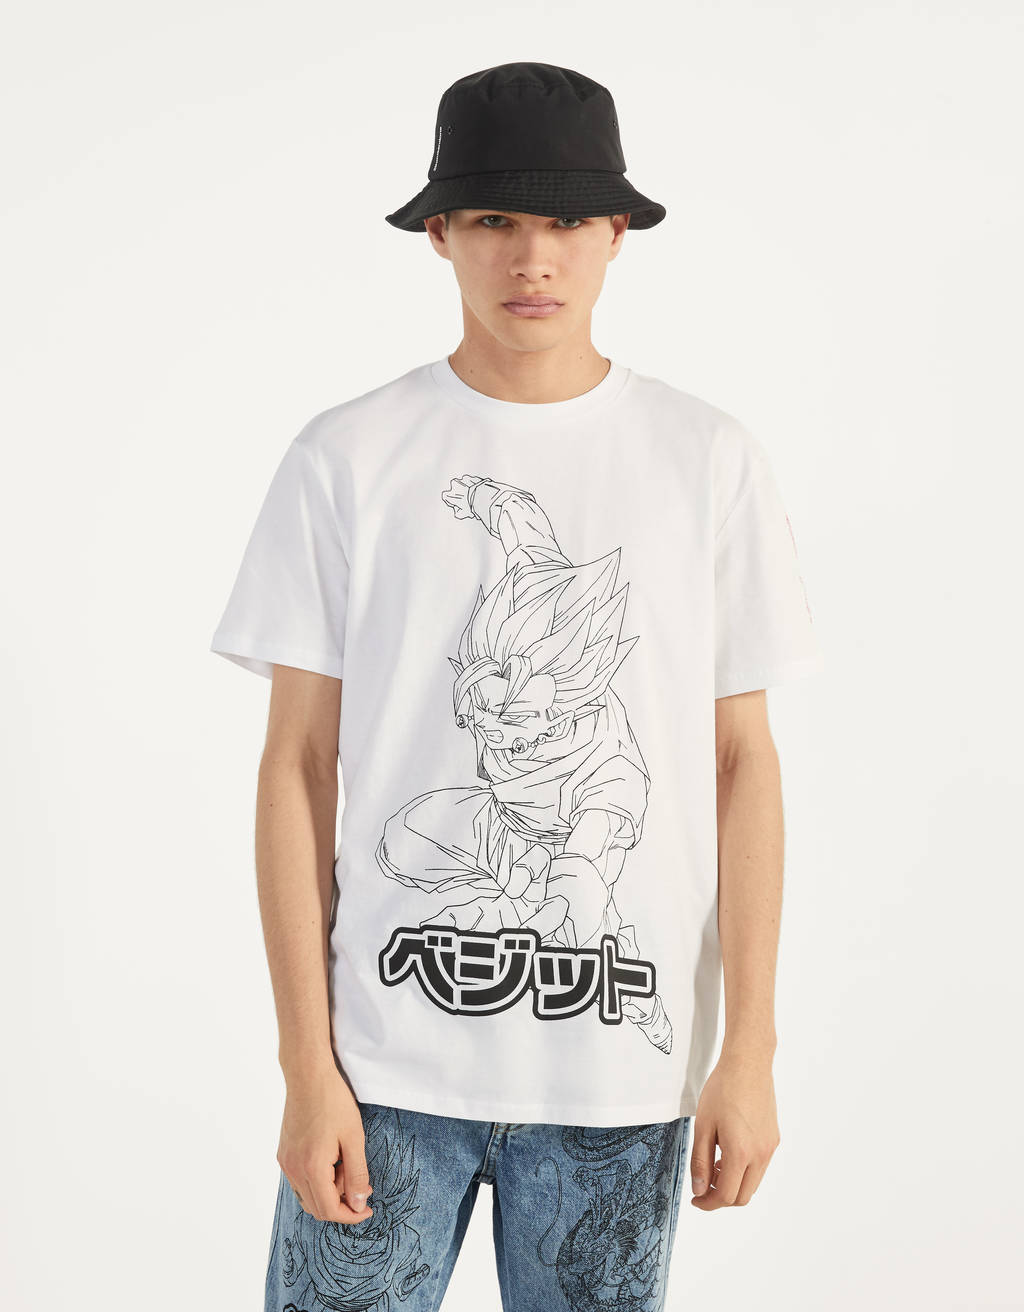 Acerca de la configuración trompeta cebra Dragon Ball Z tiene una nueva colección de ropa en Bershka | Hobby Consolas